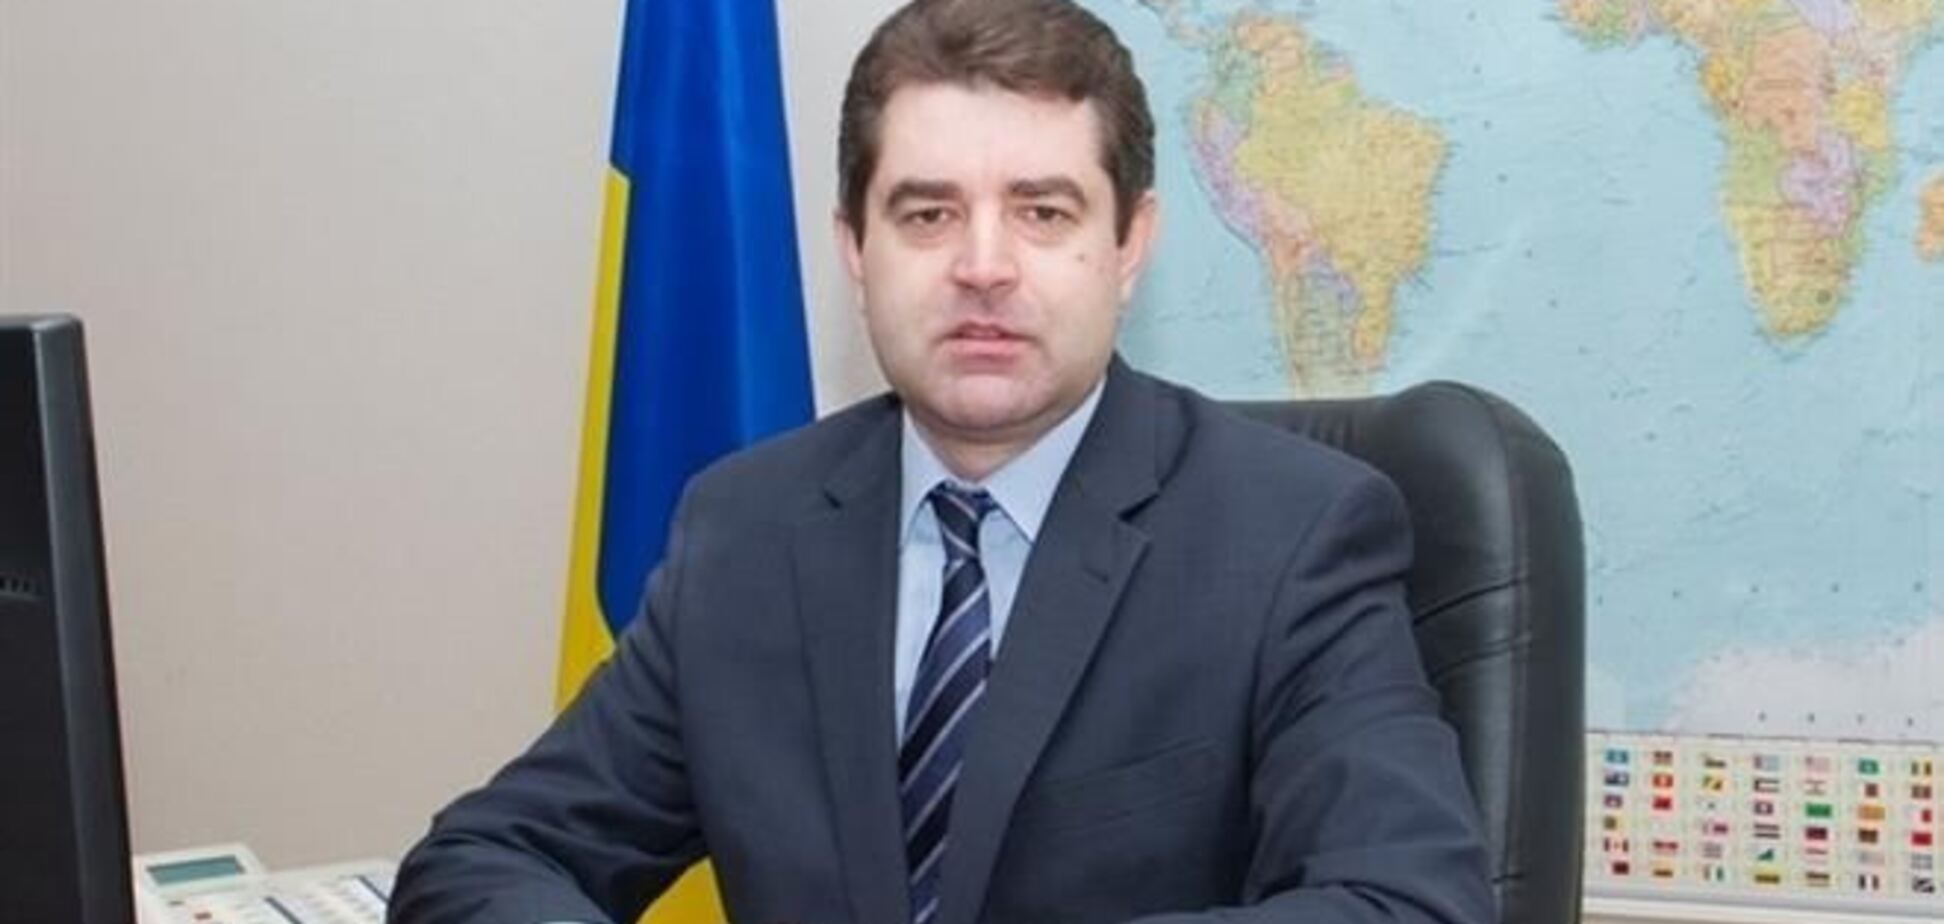 Україна не збирається відновлювати візовий режим для громадян ЄС